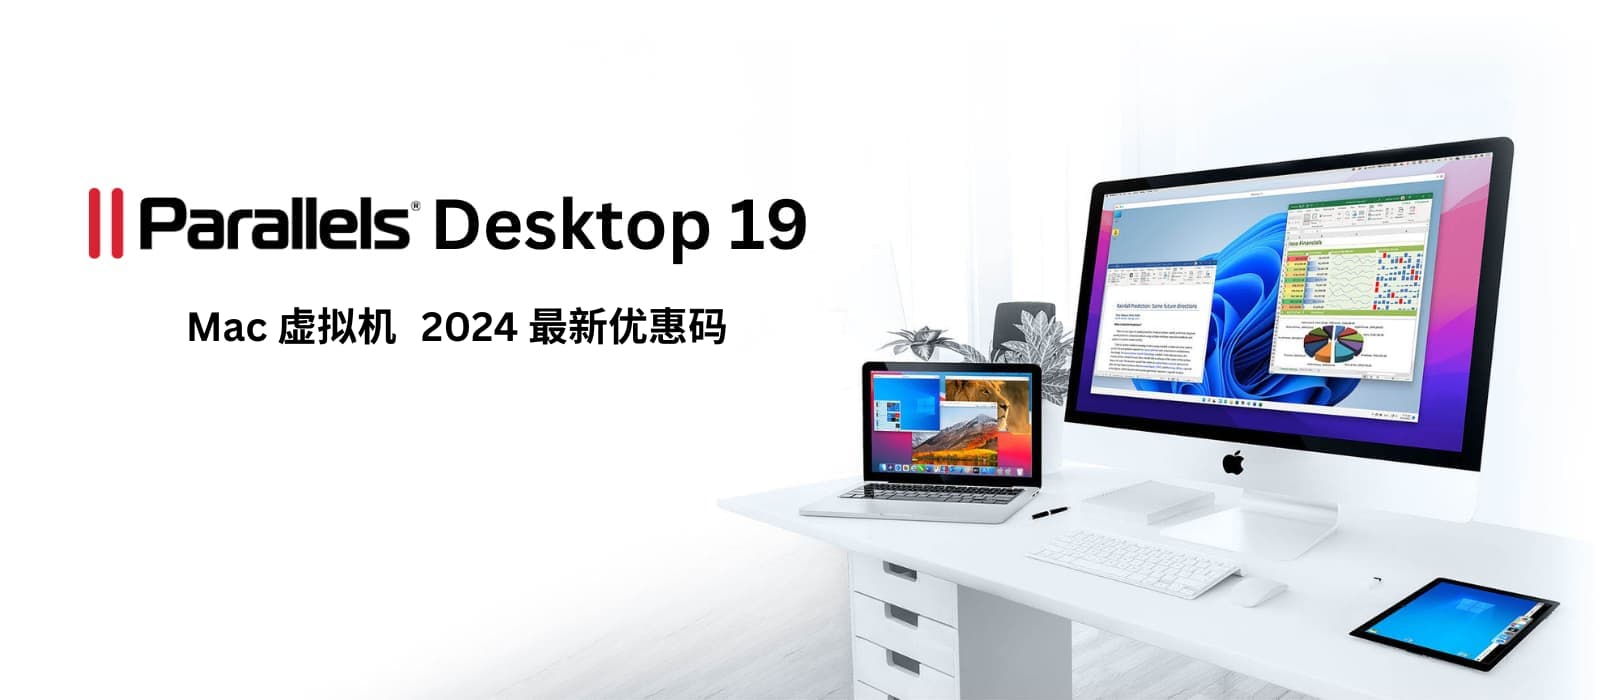 Parallels Desktop 19 – macOS 虚拟机工具，2024春季 8 折限时优惠[截止2024年5月1日]